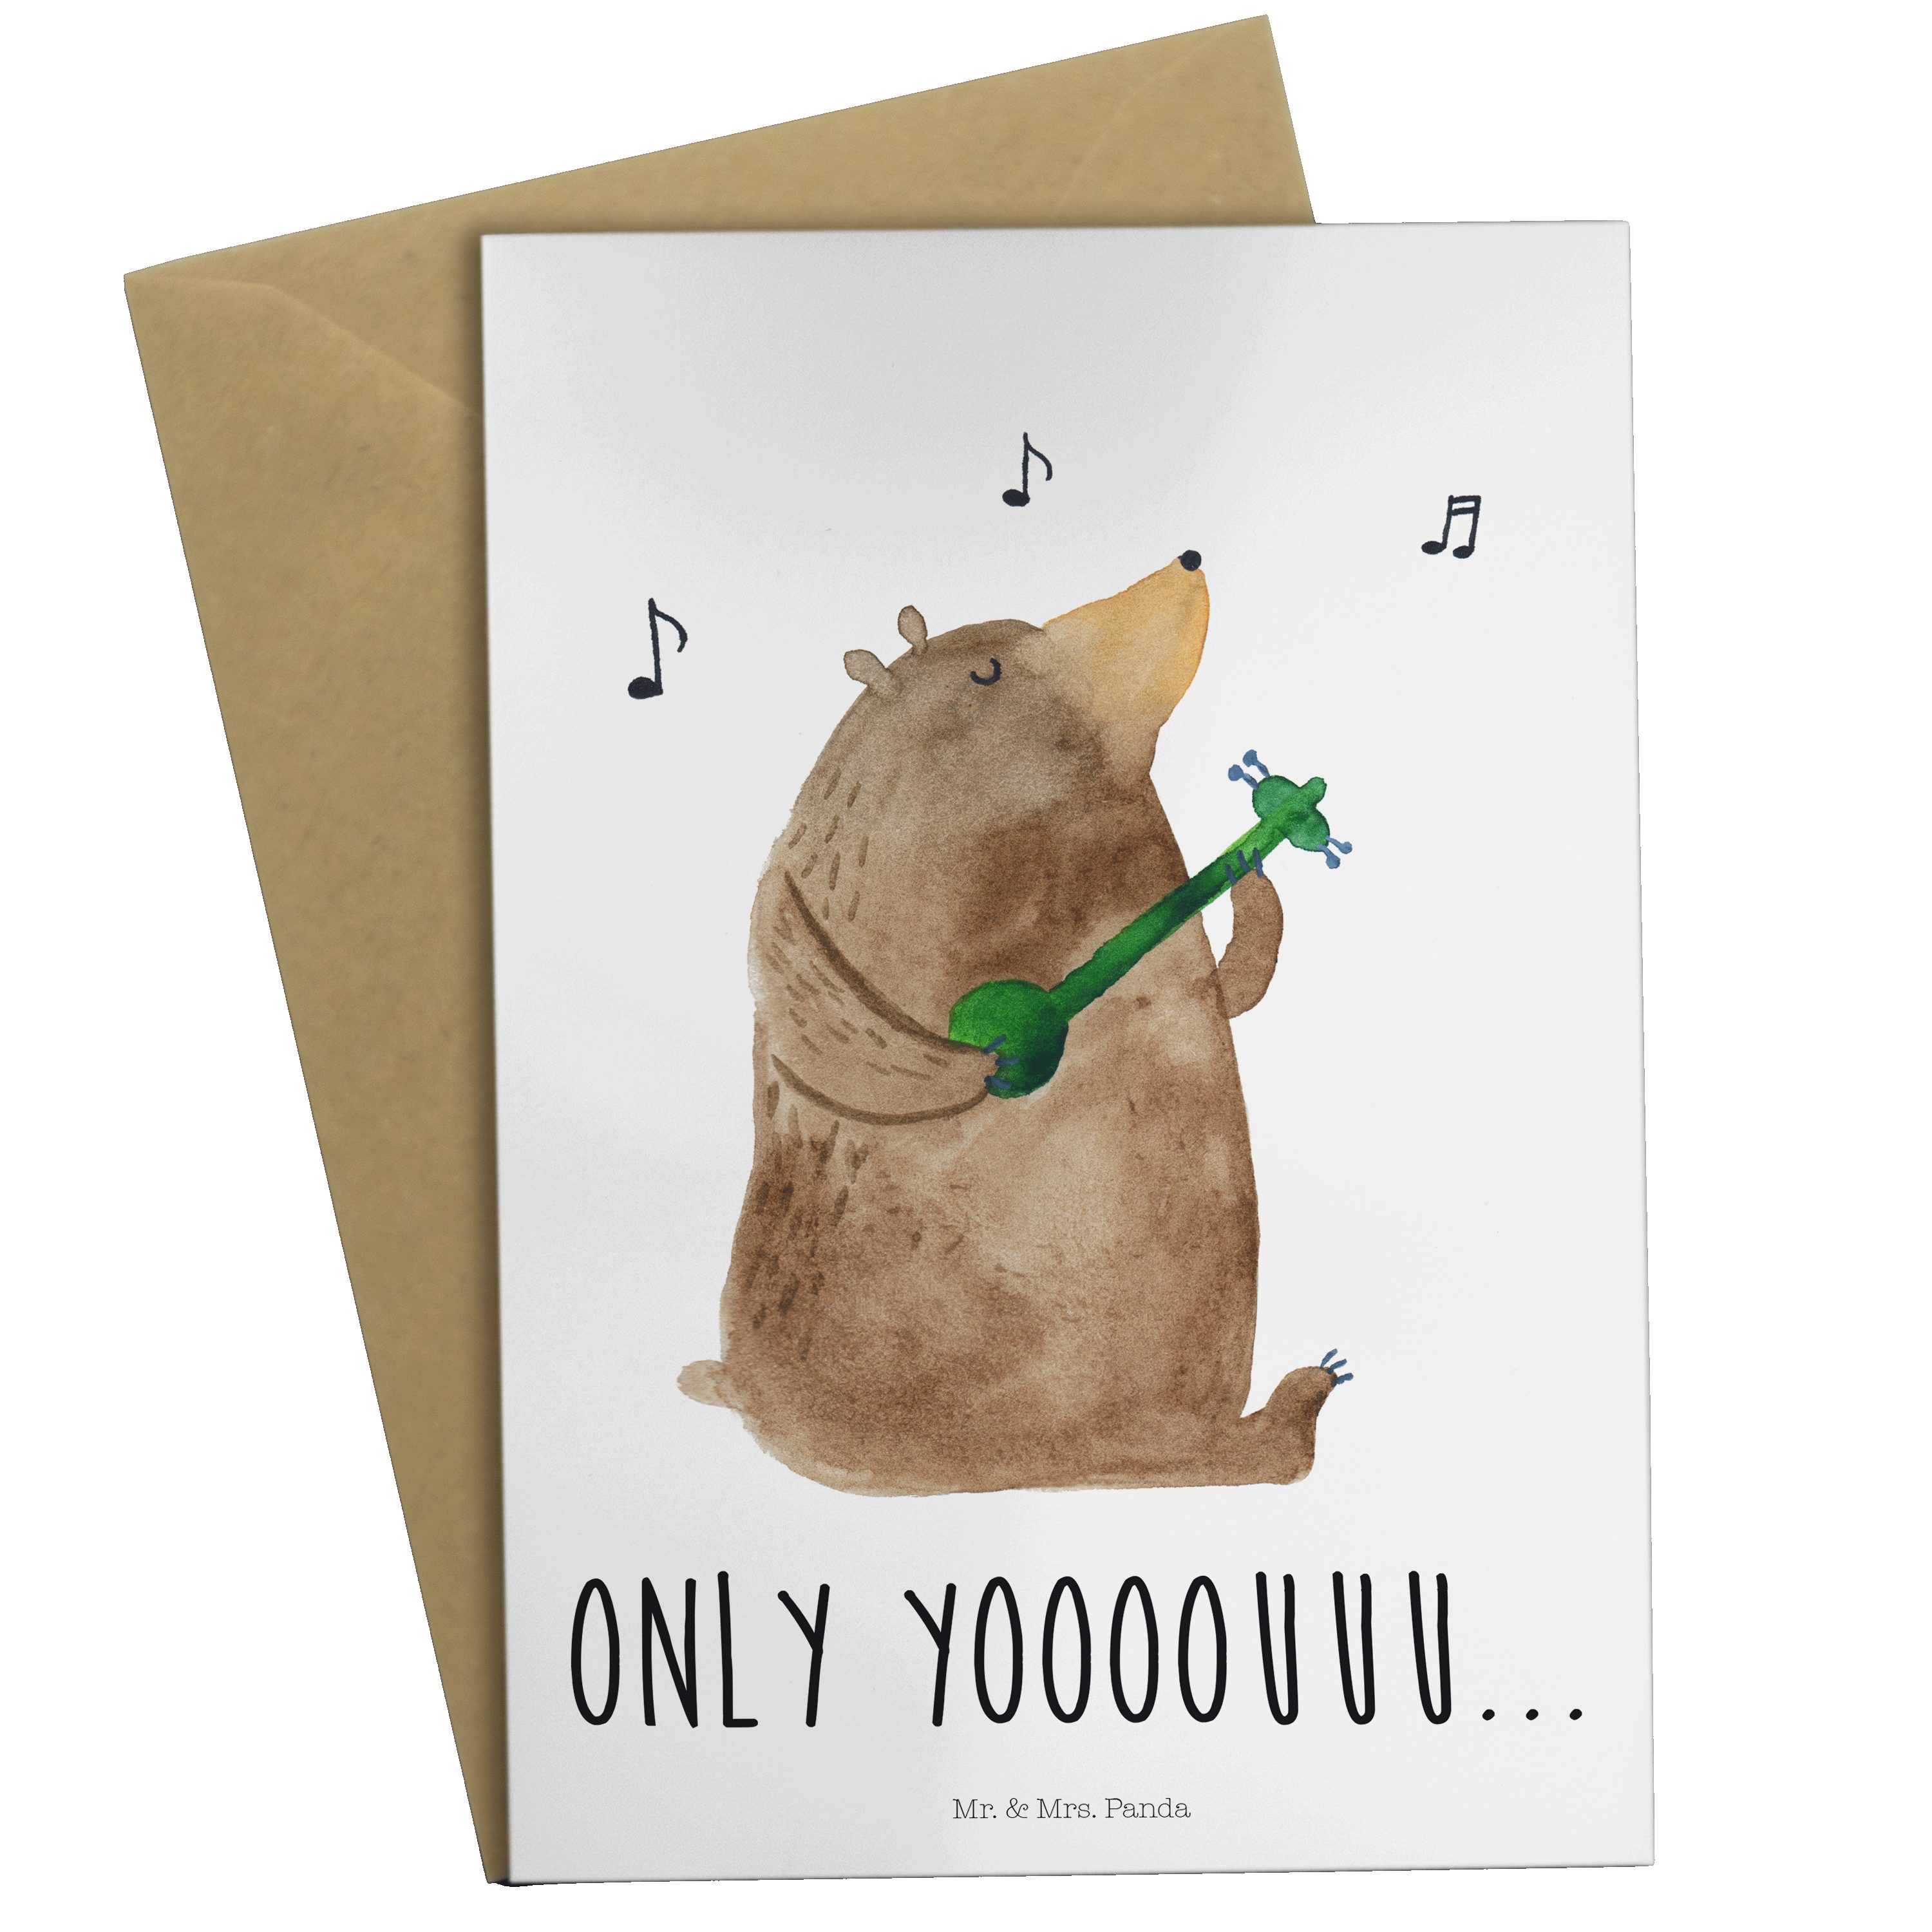 Mr. & Mrs. Panda Karte, Hochzeitskarte, Weiß - Geburtst Bär Grußkarte - Geschenk, Gitarre Teddy